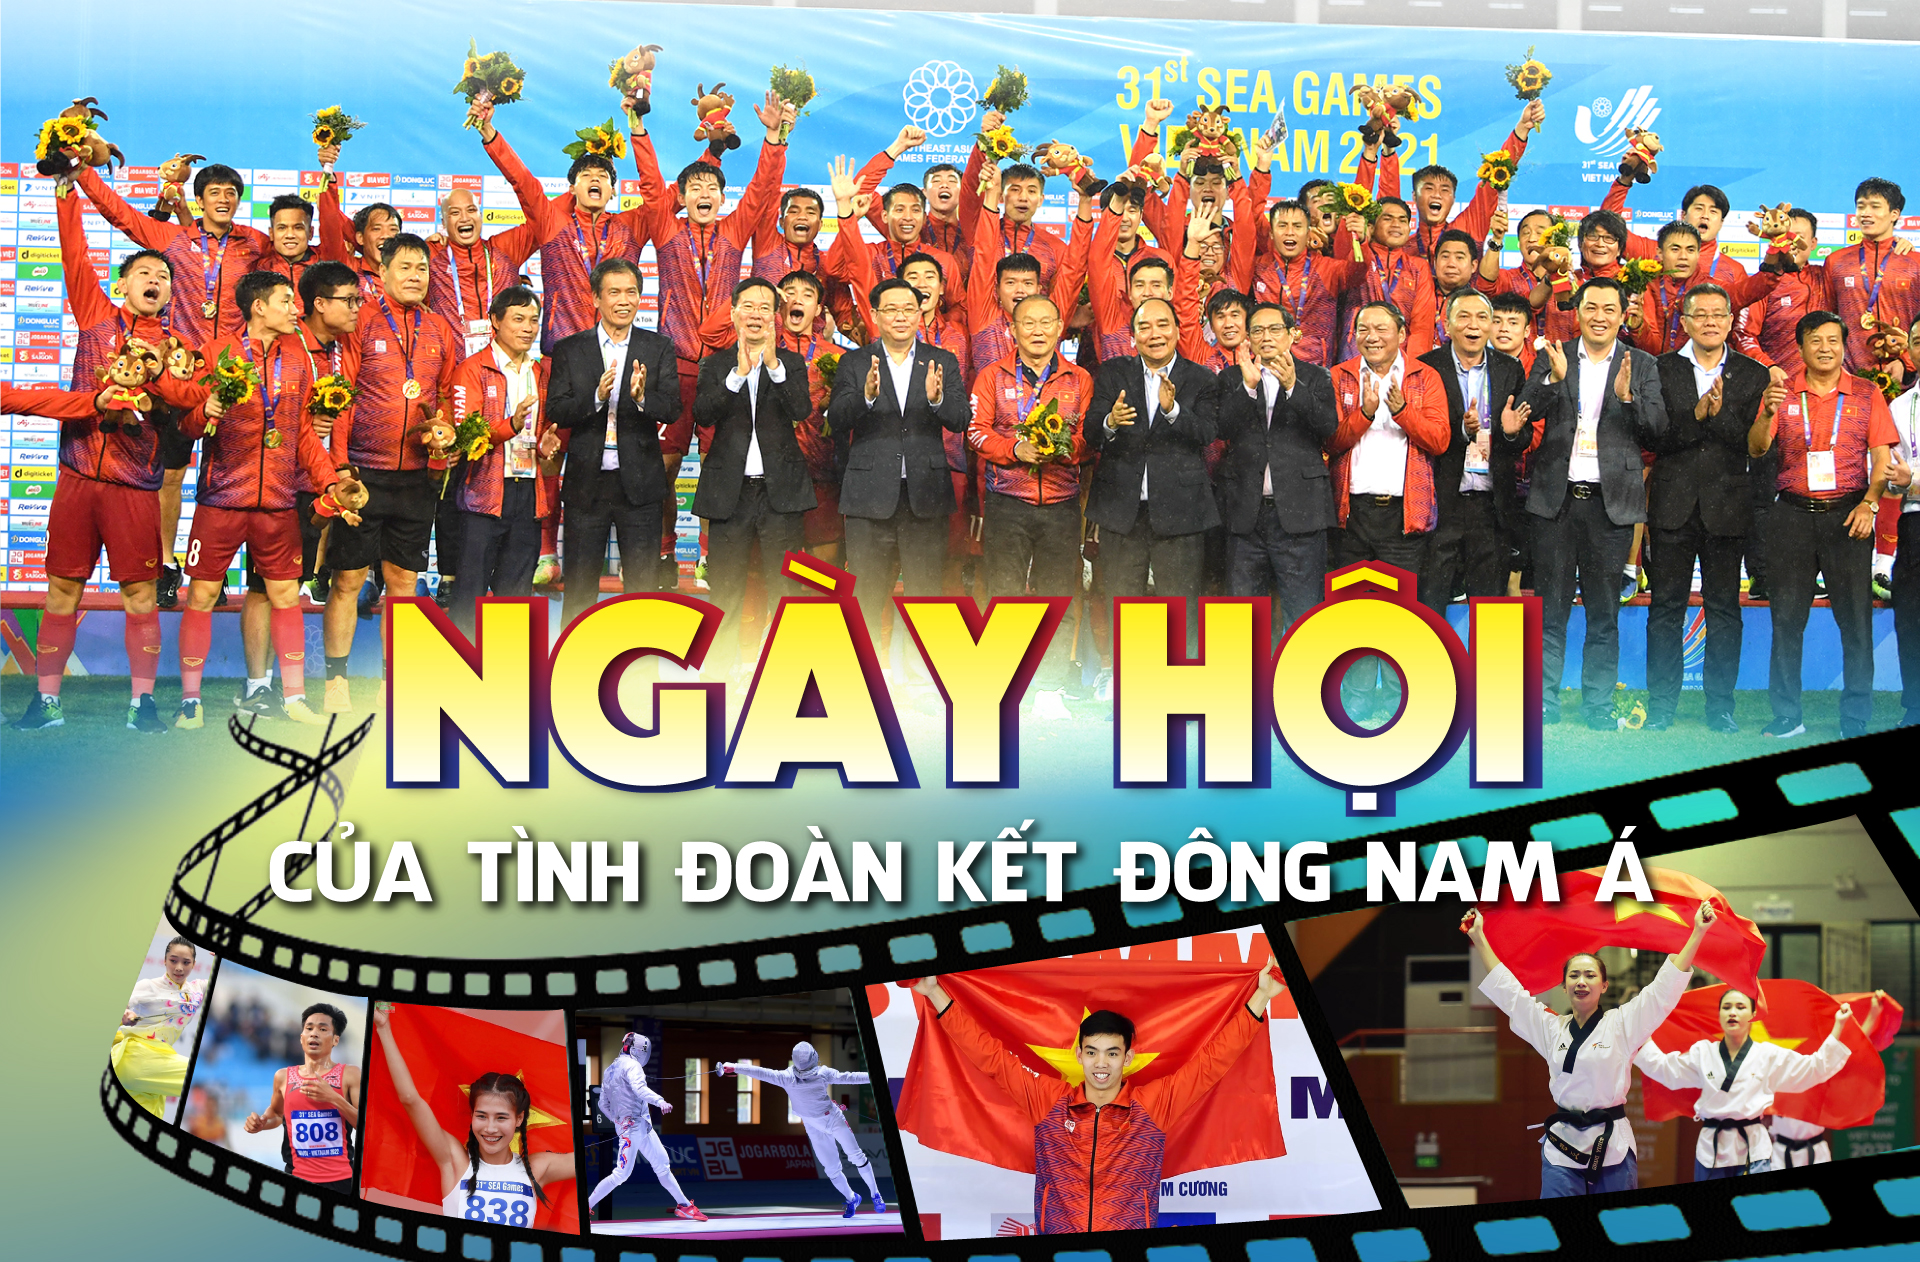 Ngày hội của tình đoàn kết Đông Nam Á